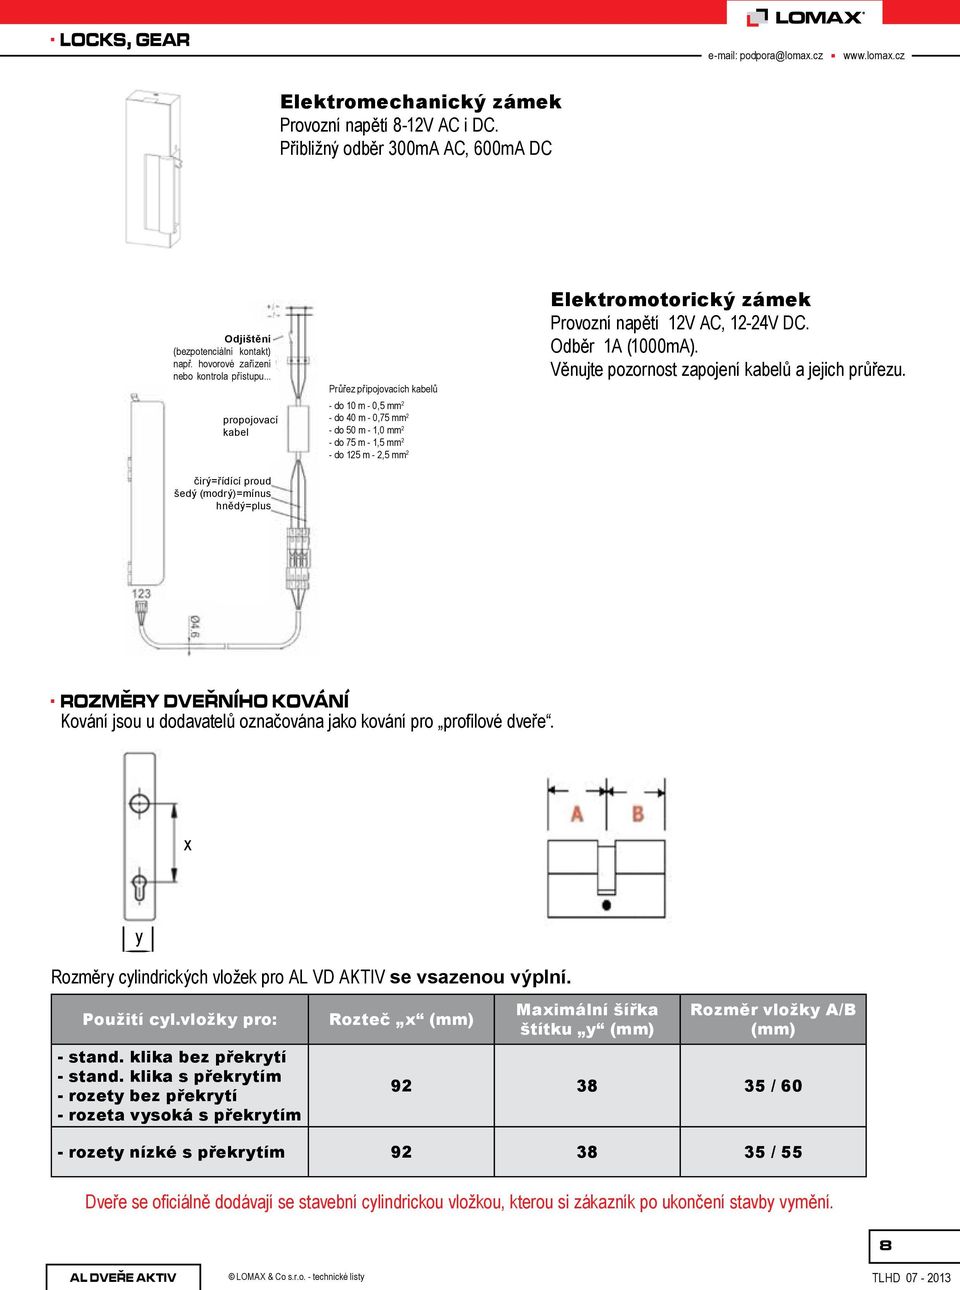 mm 2 Elektromotorický zámek Provozní napětí 12V AC, 12-24V DC. Odběr 1A (1000mA). Věnujte pozornost zapojení kabelů a jejich průřezu.